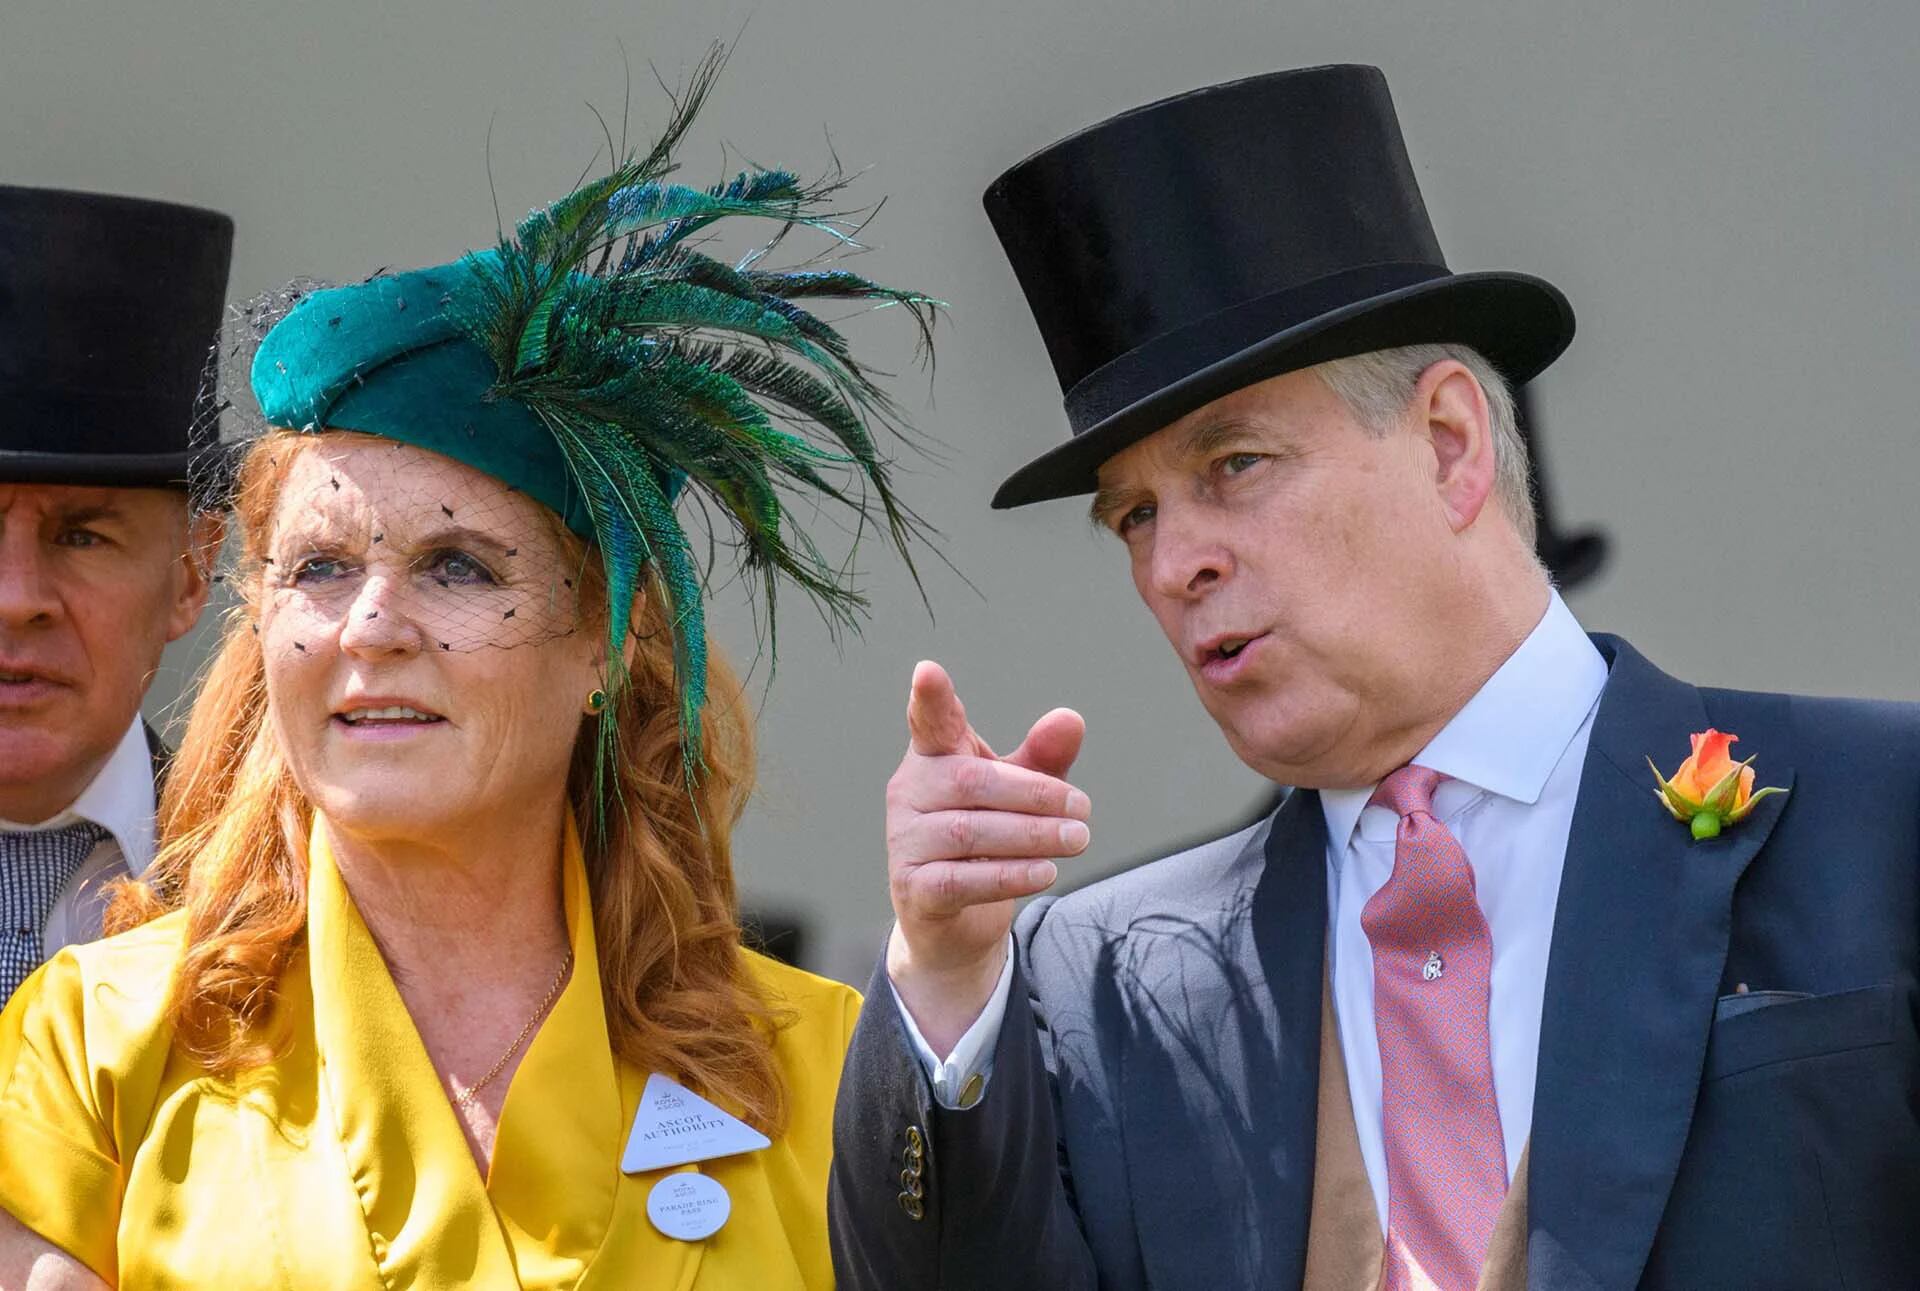 Sarah Ferguson duquesa de York y el príncipe Andrés
Royal Ascot, día 4, Reino Unido - 21 jun 2019 (Shutterstock)